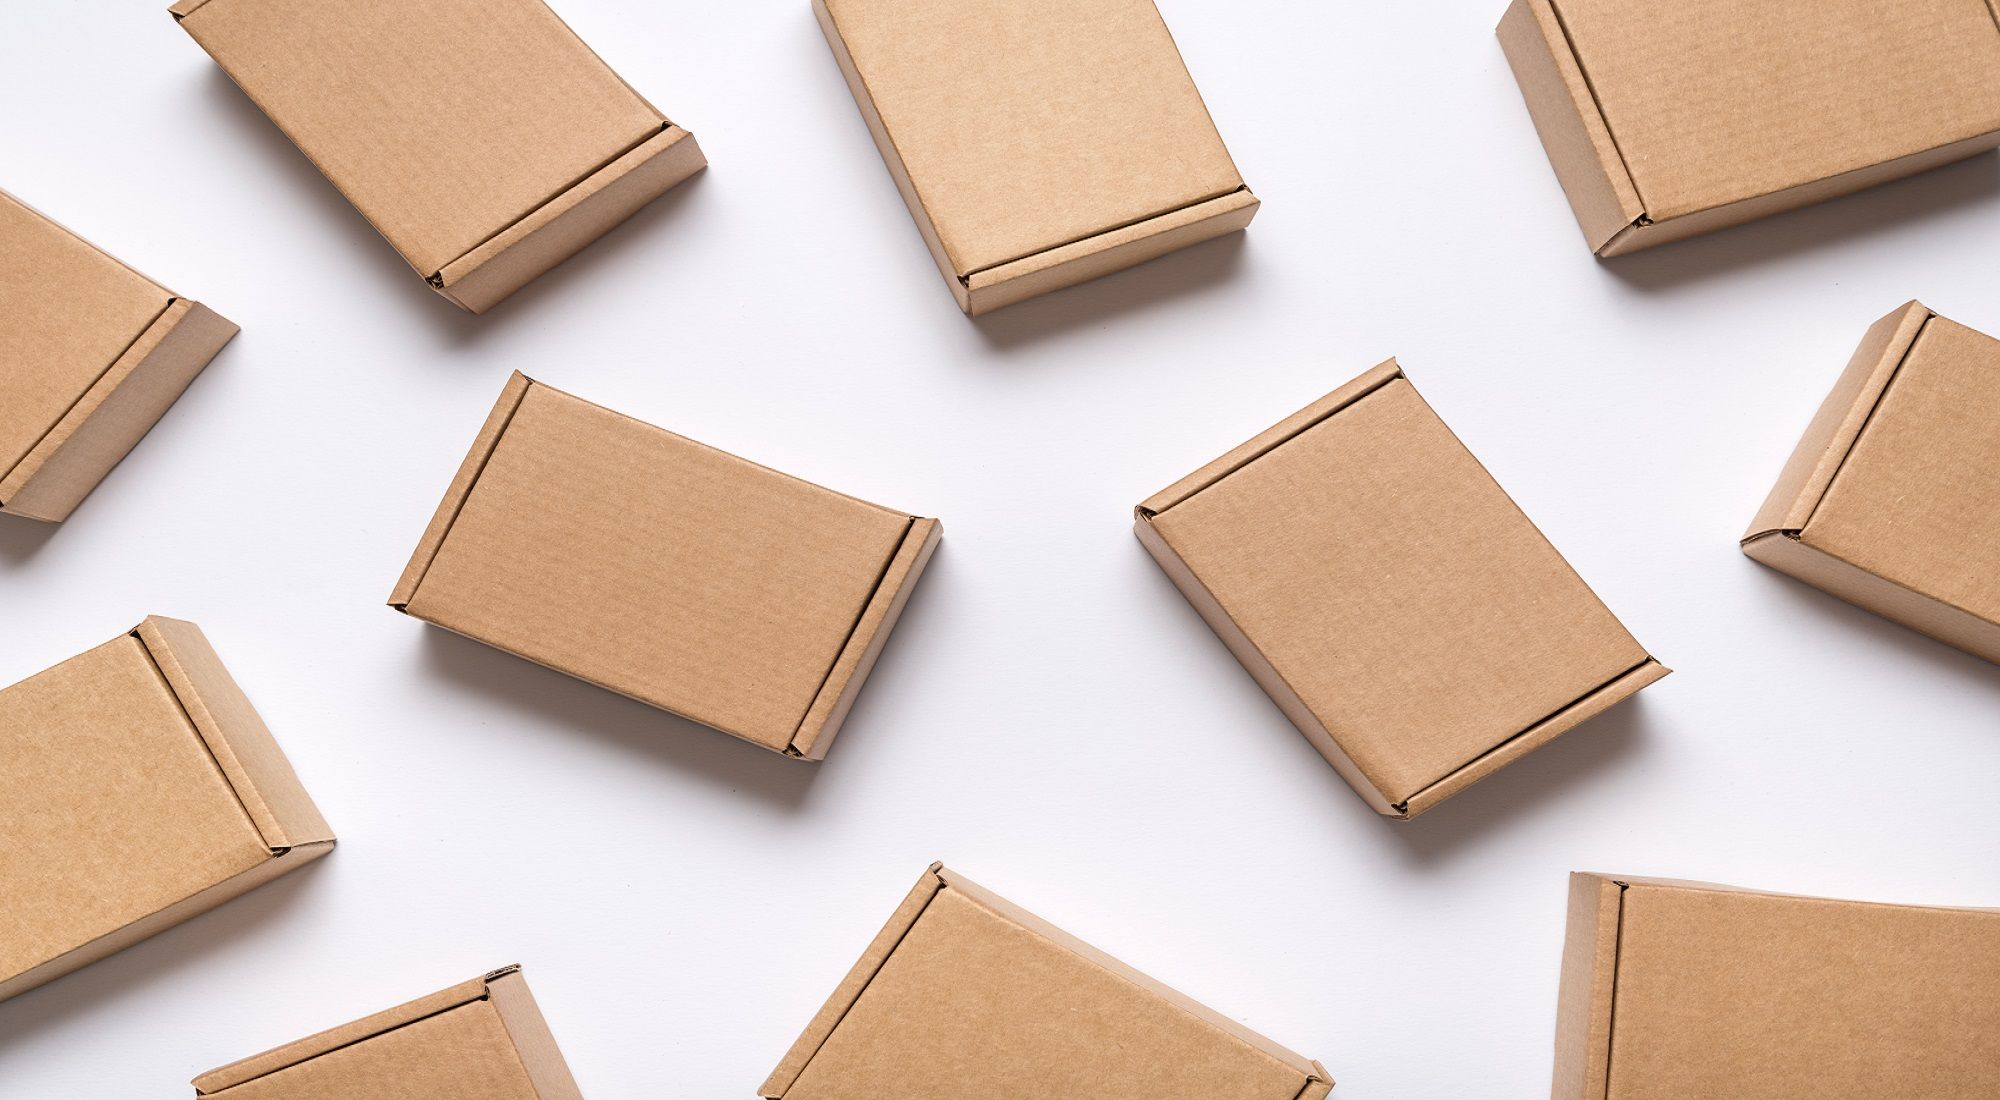 Scatole personalizzate a Roma: Necessiti di scatole personalizzate per promuovere in maniera efficace il tuo brand? Con Rotostampa puoi personalizzare il tuo packaging in maniera semplice e …